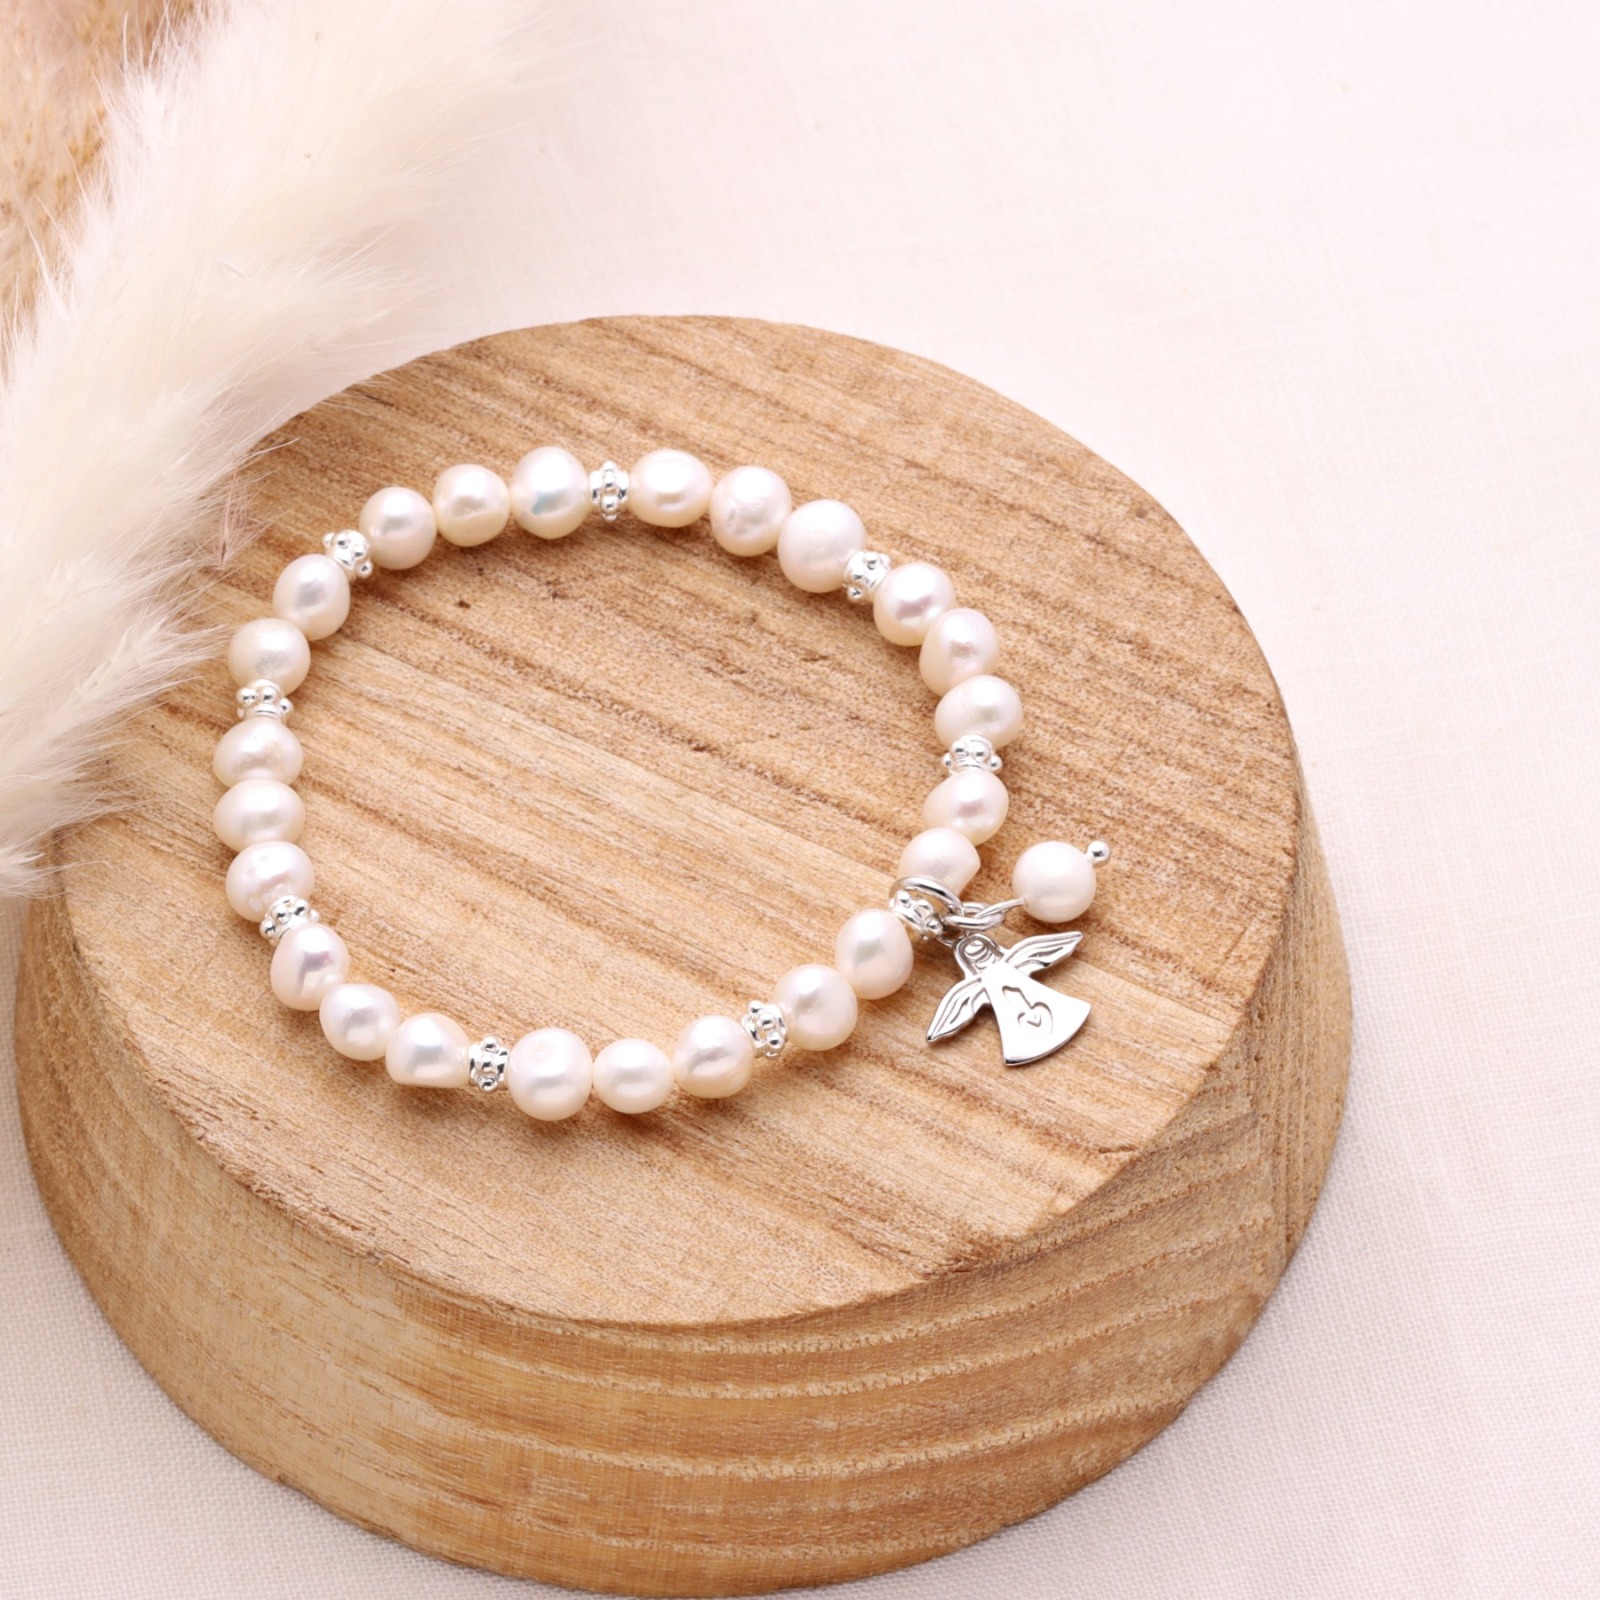 Armband aus echten Perlen mit Schutzengel Silber Geschenk zu Weihnachten elastisch 4